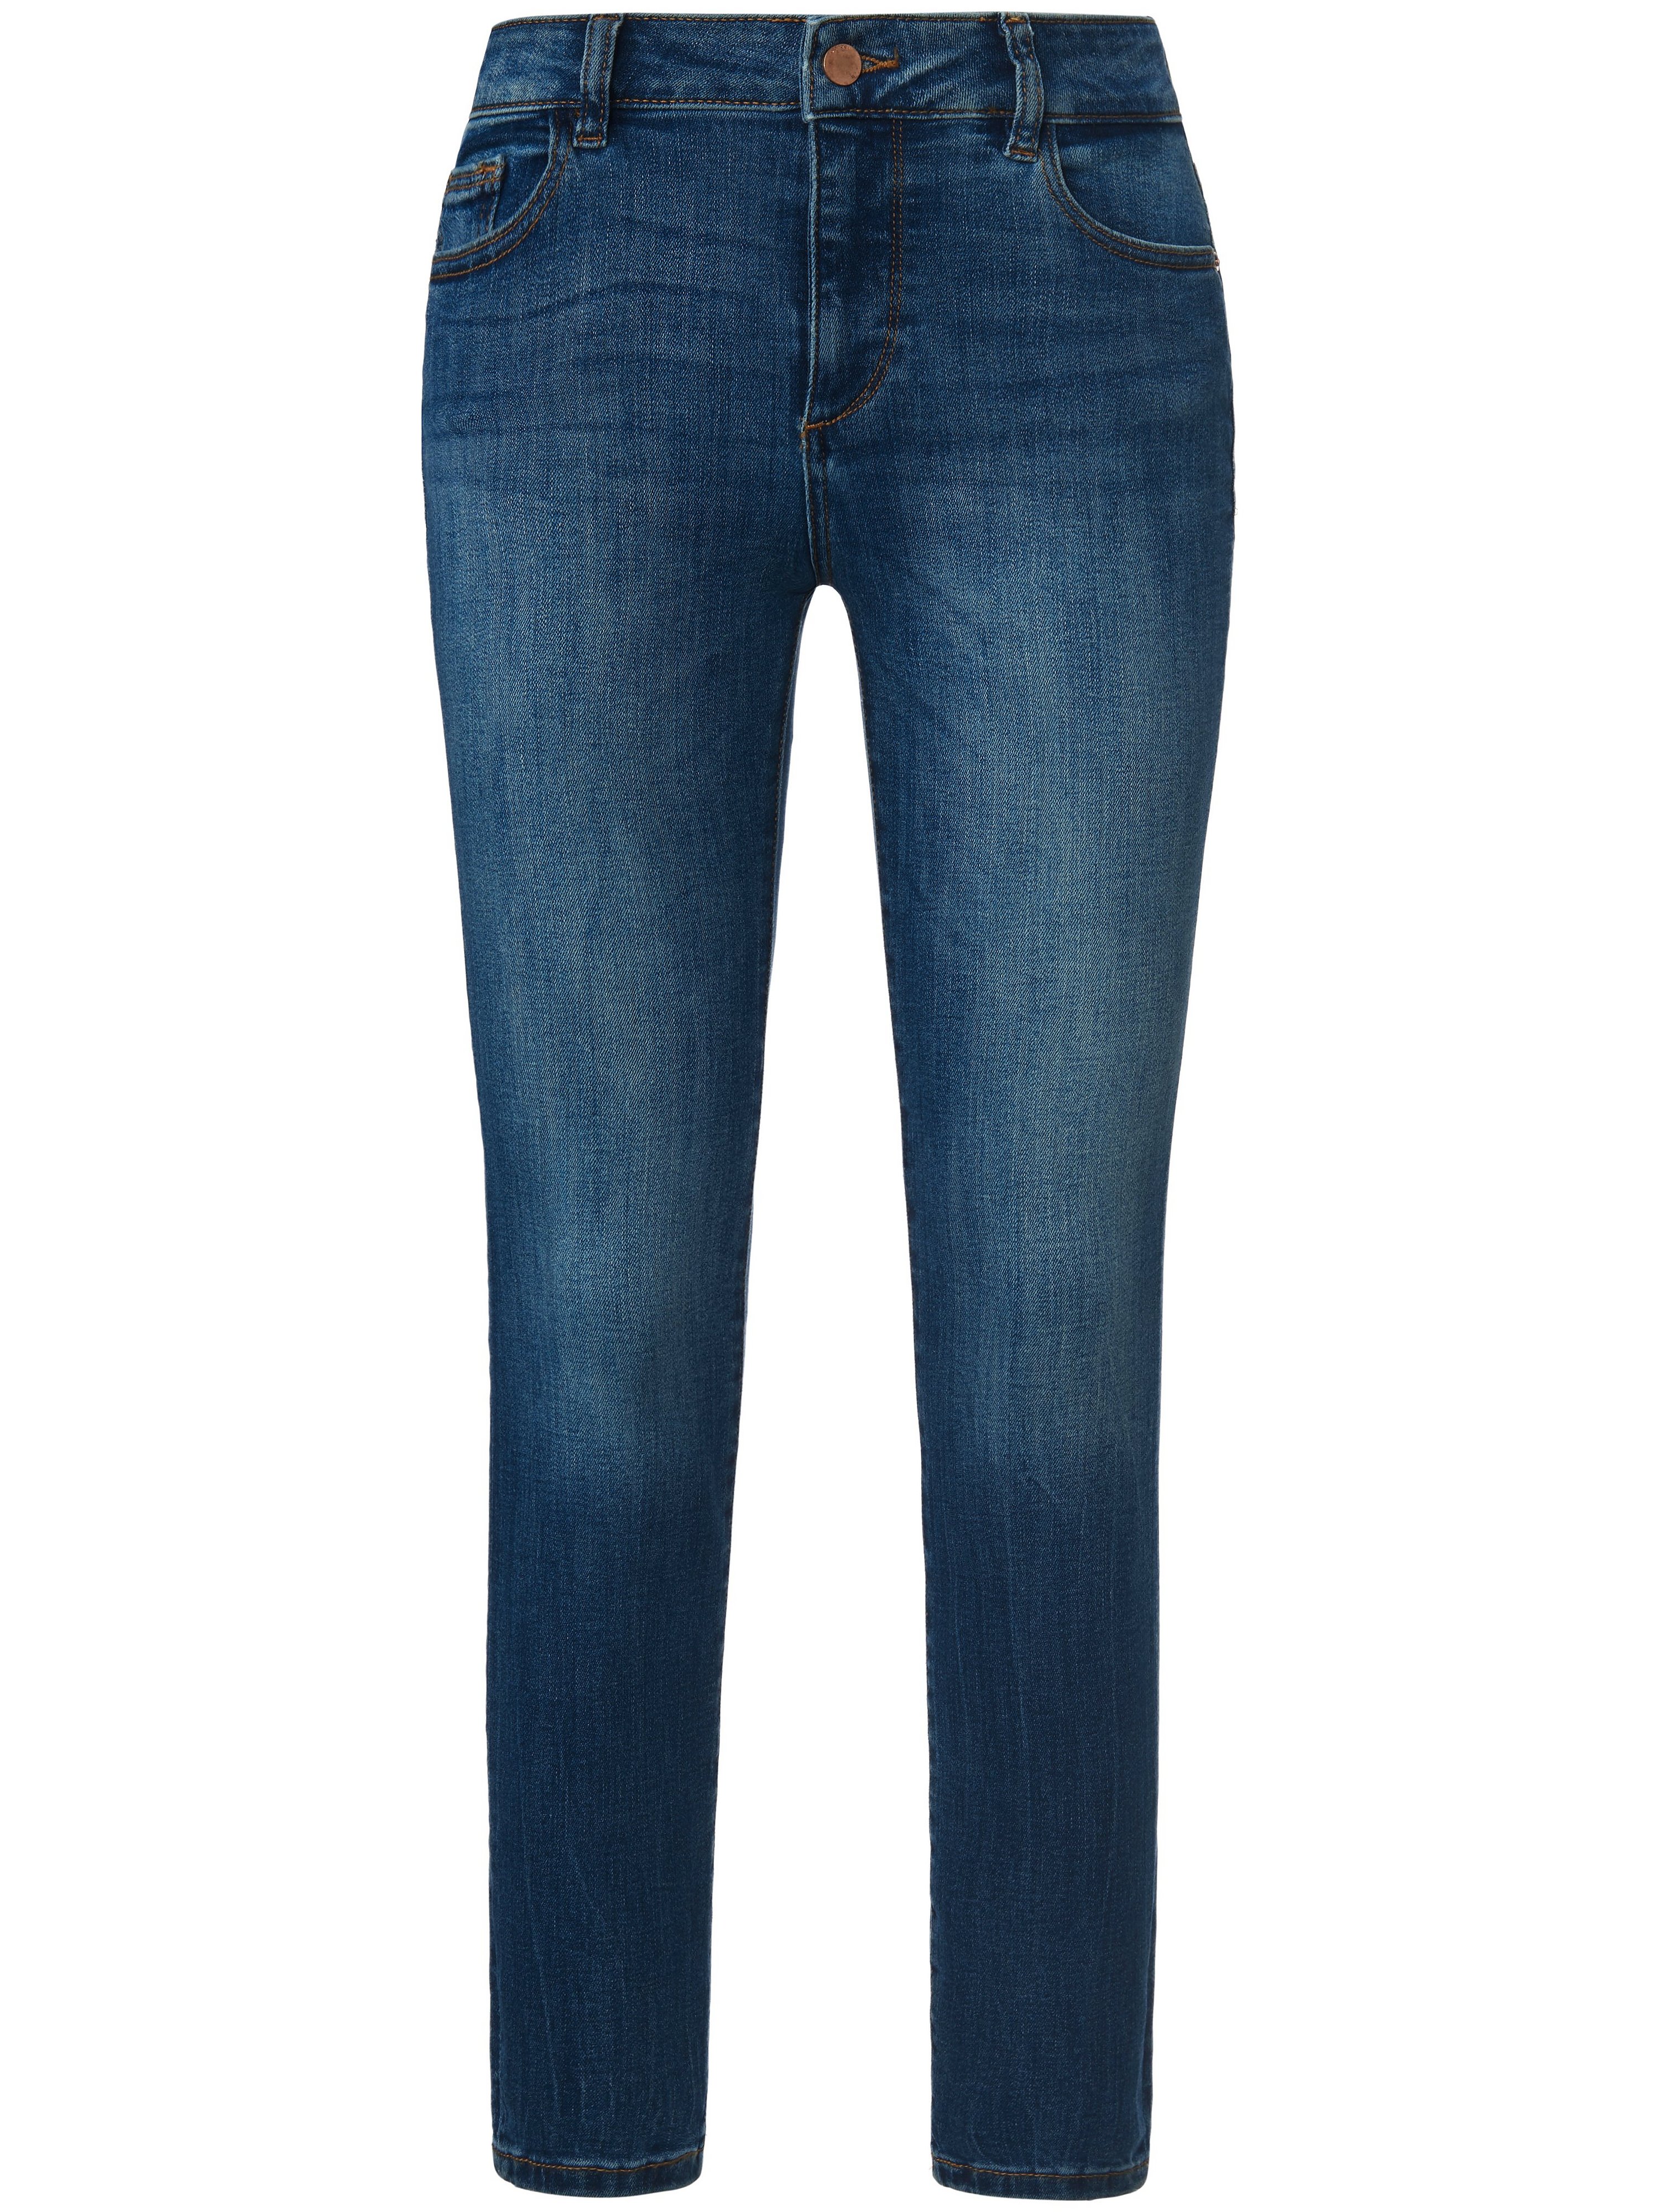 Le jean longueur chevilles modèle Florence  DL1961 denim